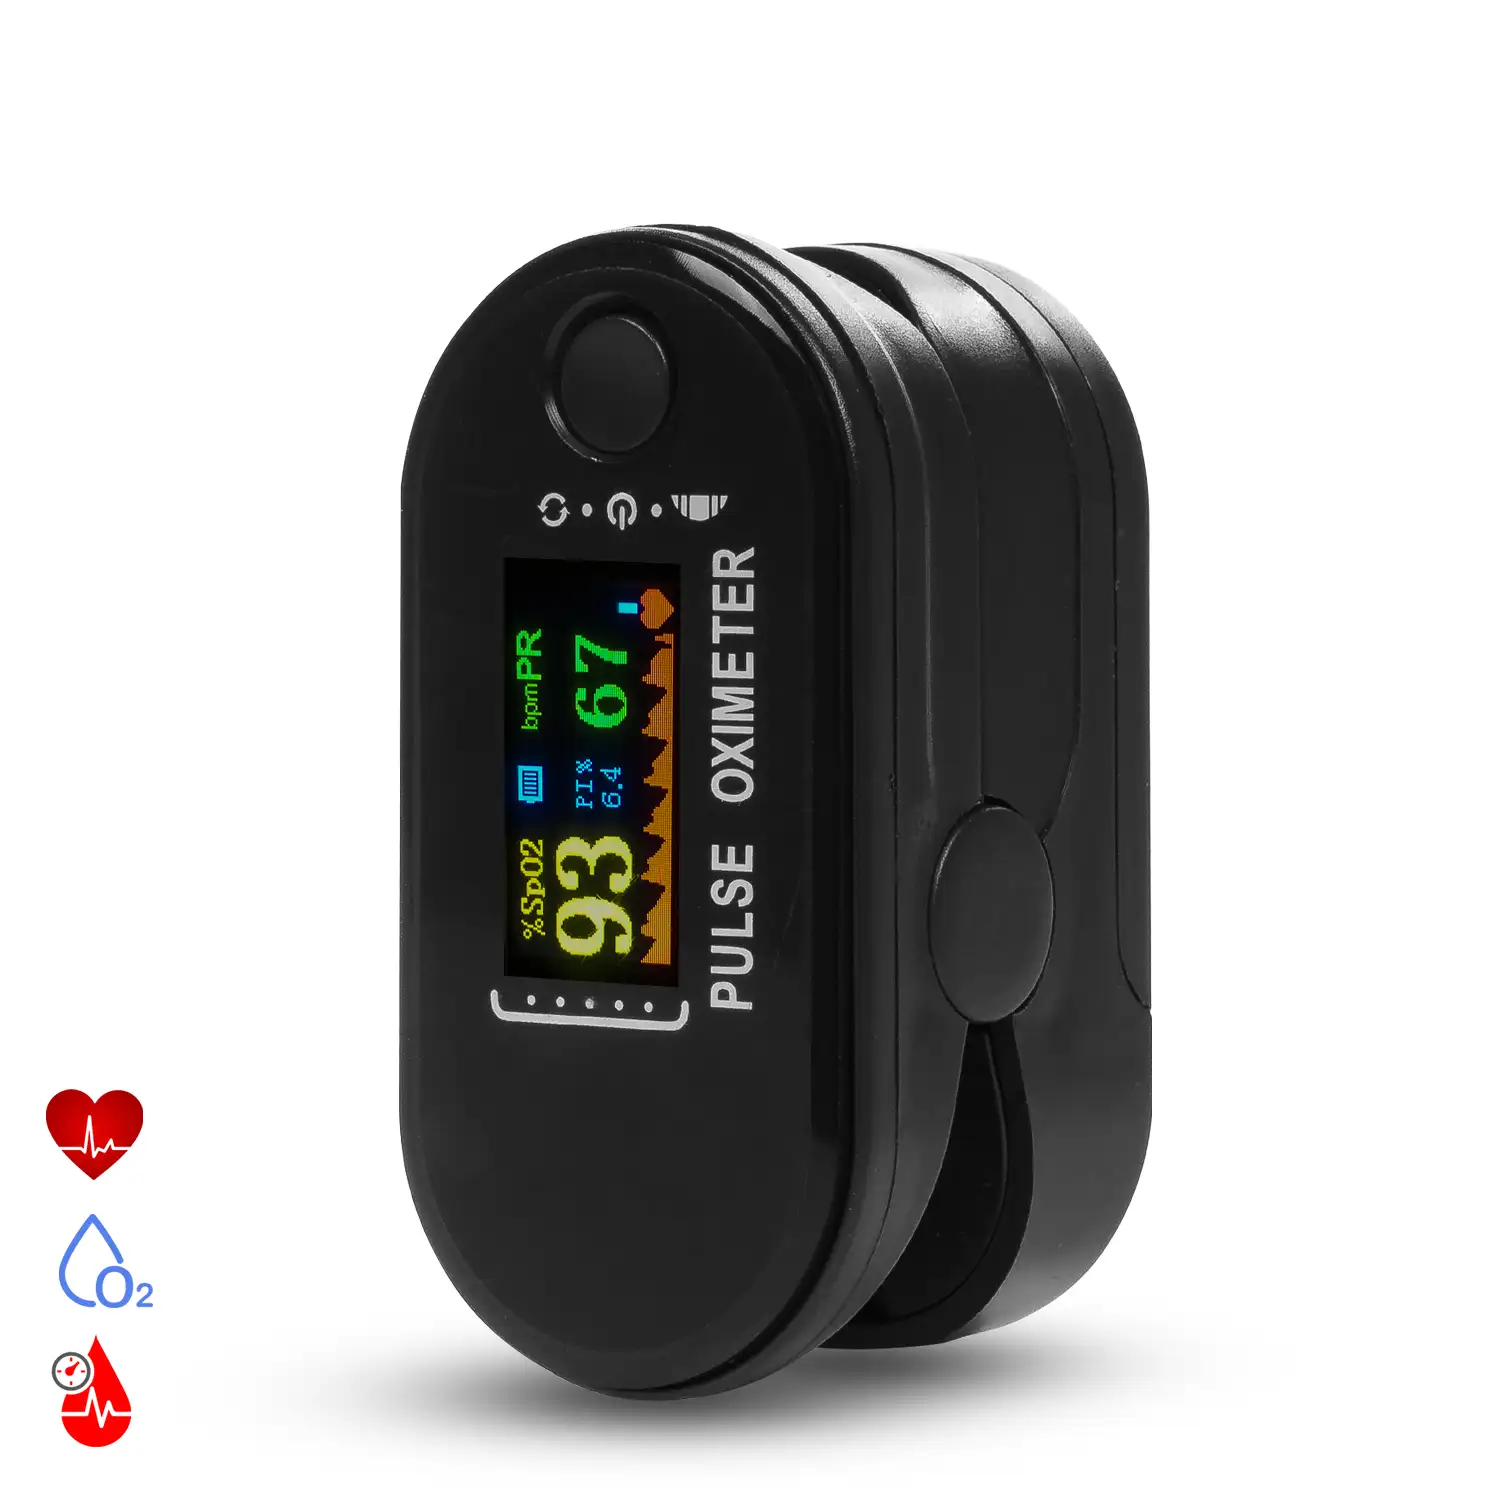 Pulsómetro digital con monitor cardiaco inalámbrico y oxímetro.